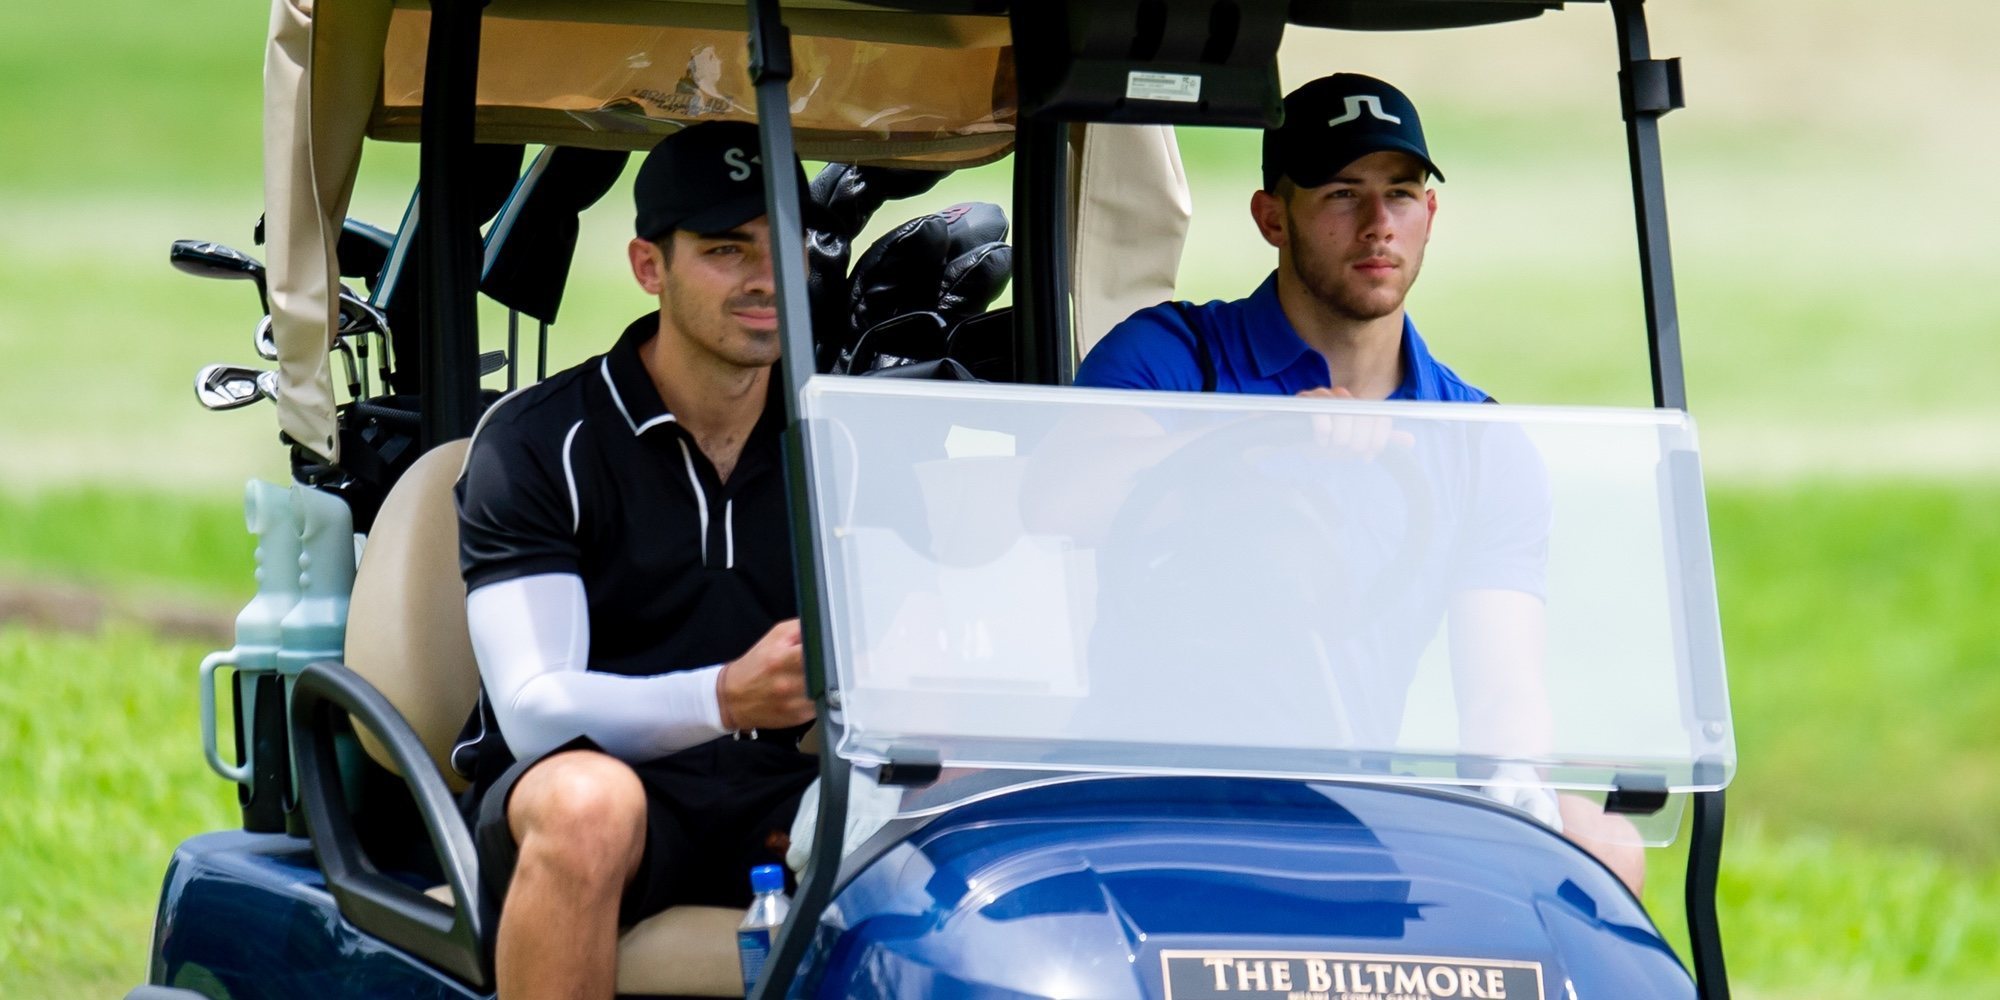 Nick y Joe Jonas disfrutan de una agradable jornada de golf antes de comenzar la gira